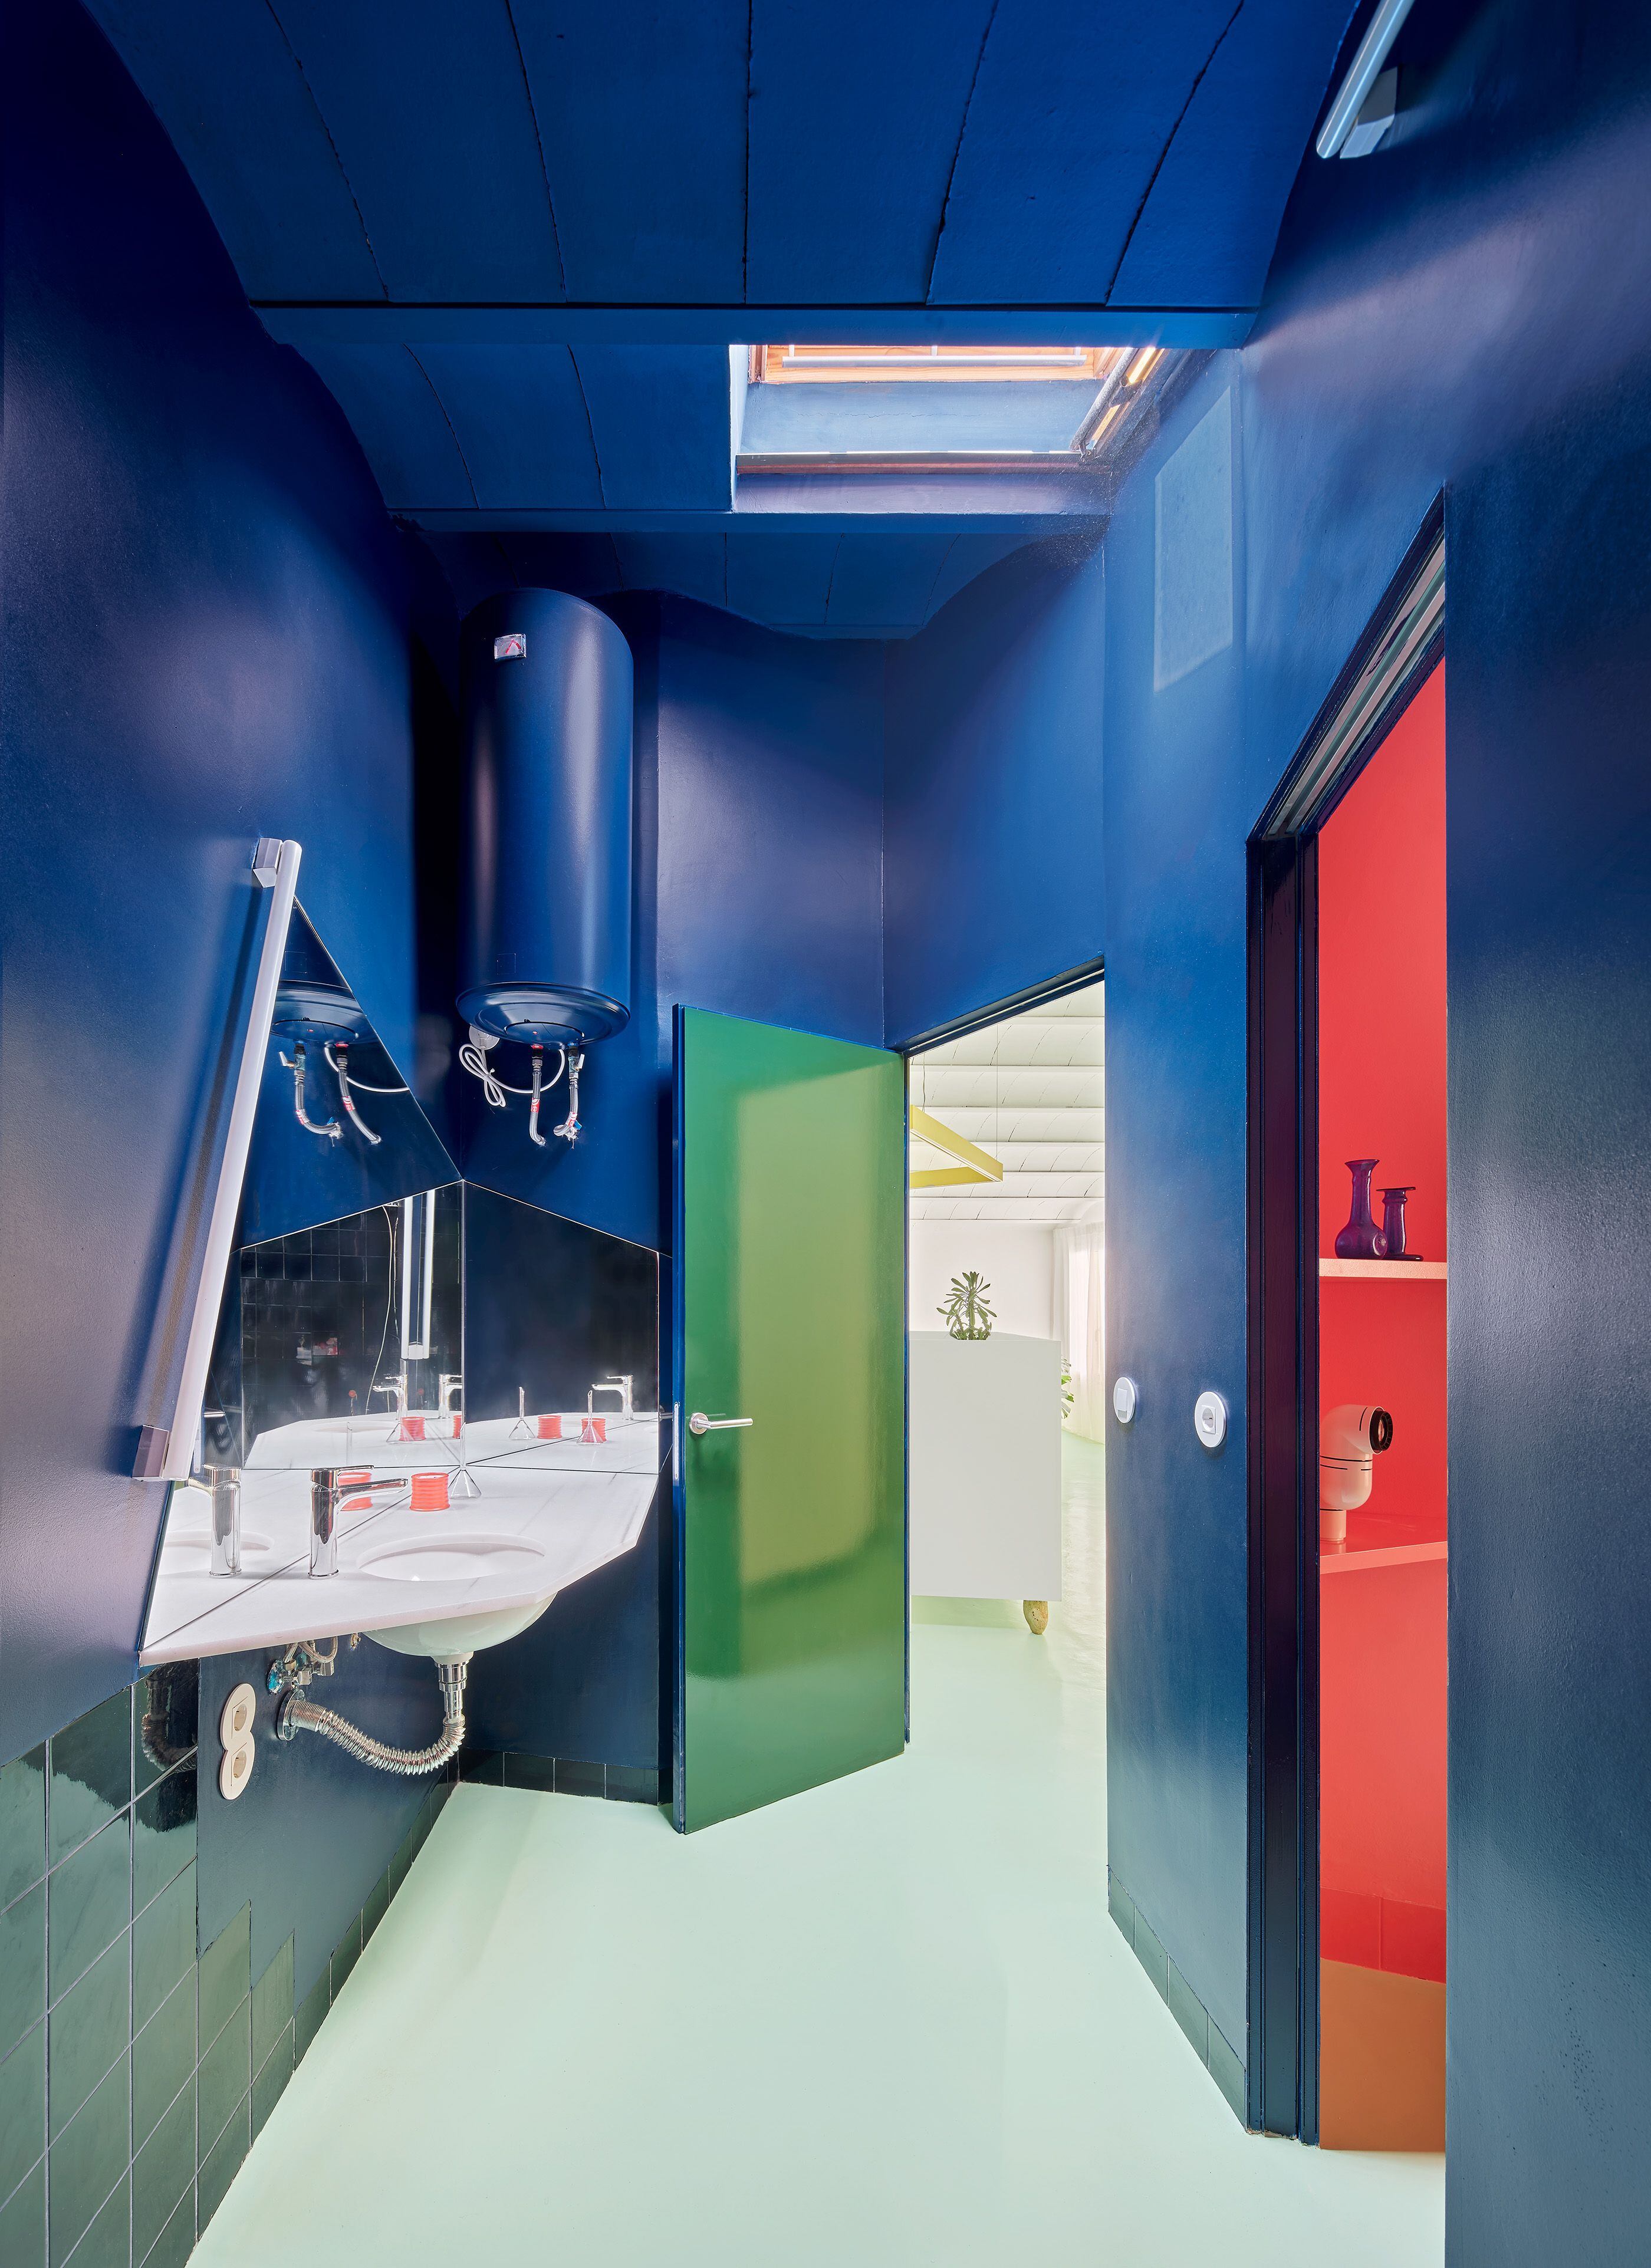 El baño, azul eléctrico, conecta con las dos estancias principales de la vivienda: el salón y el dormitorio.